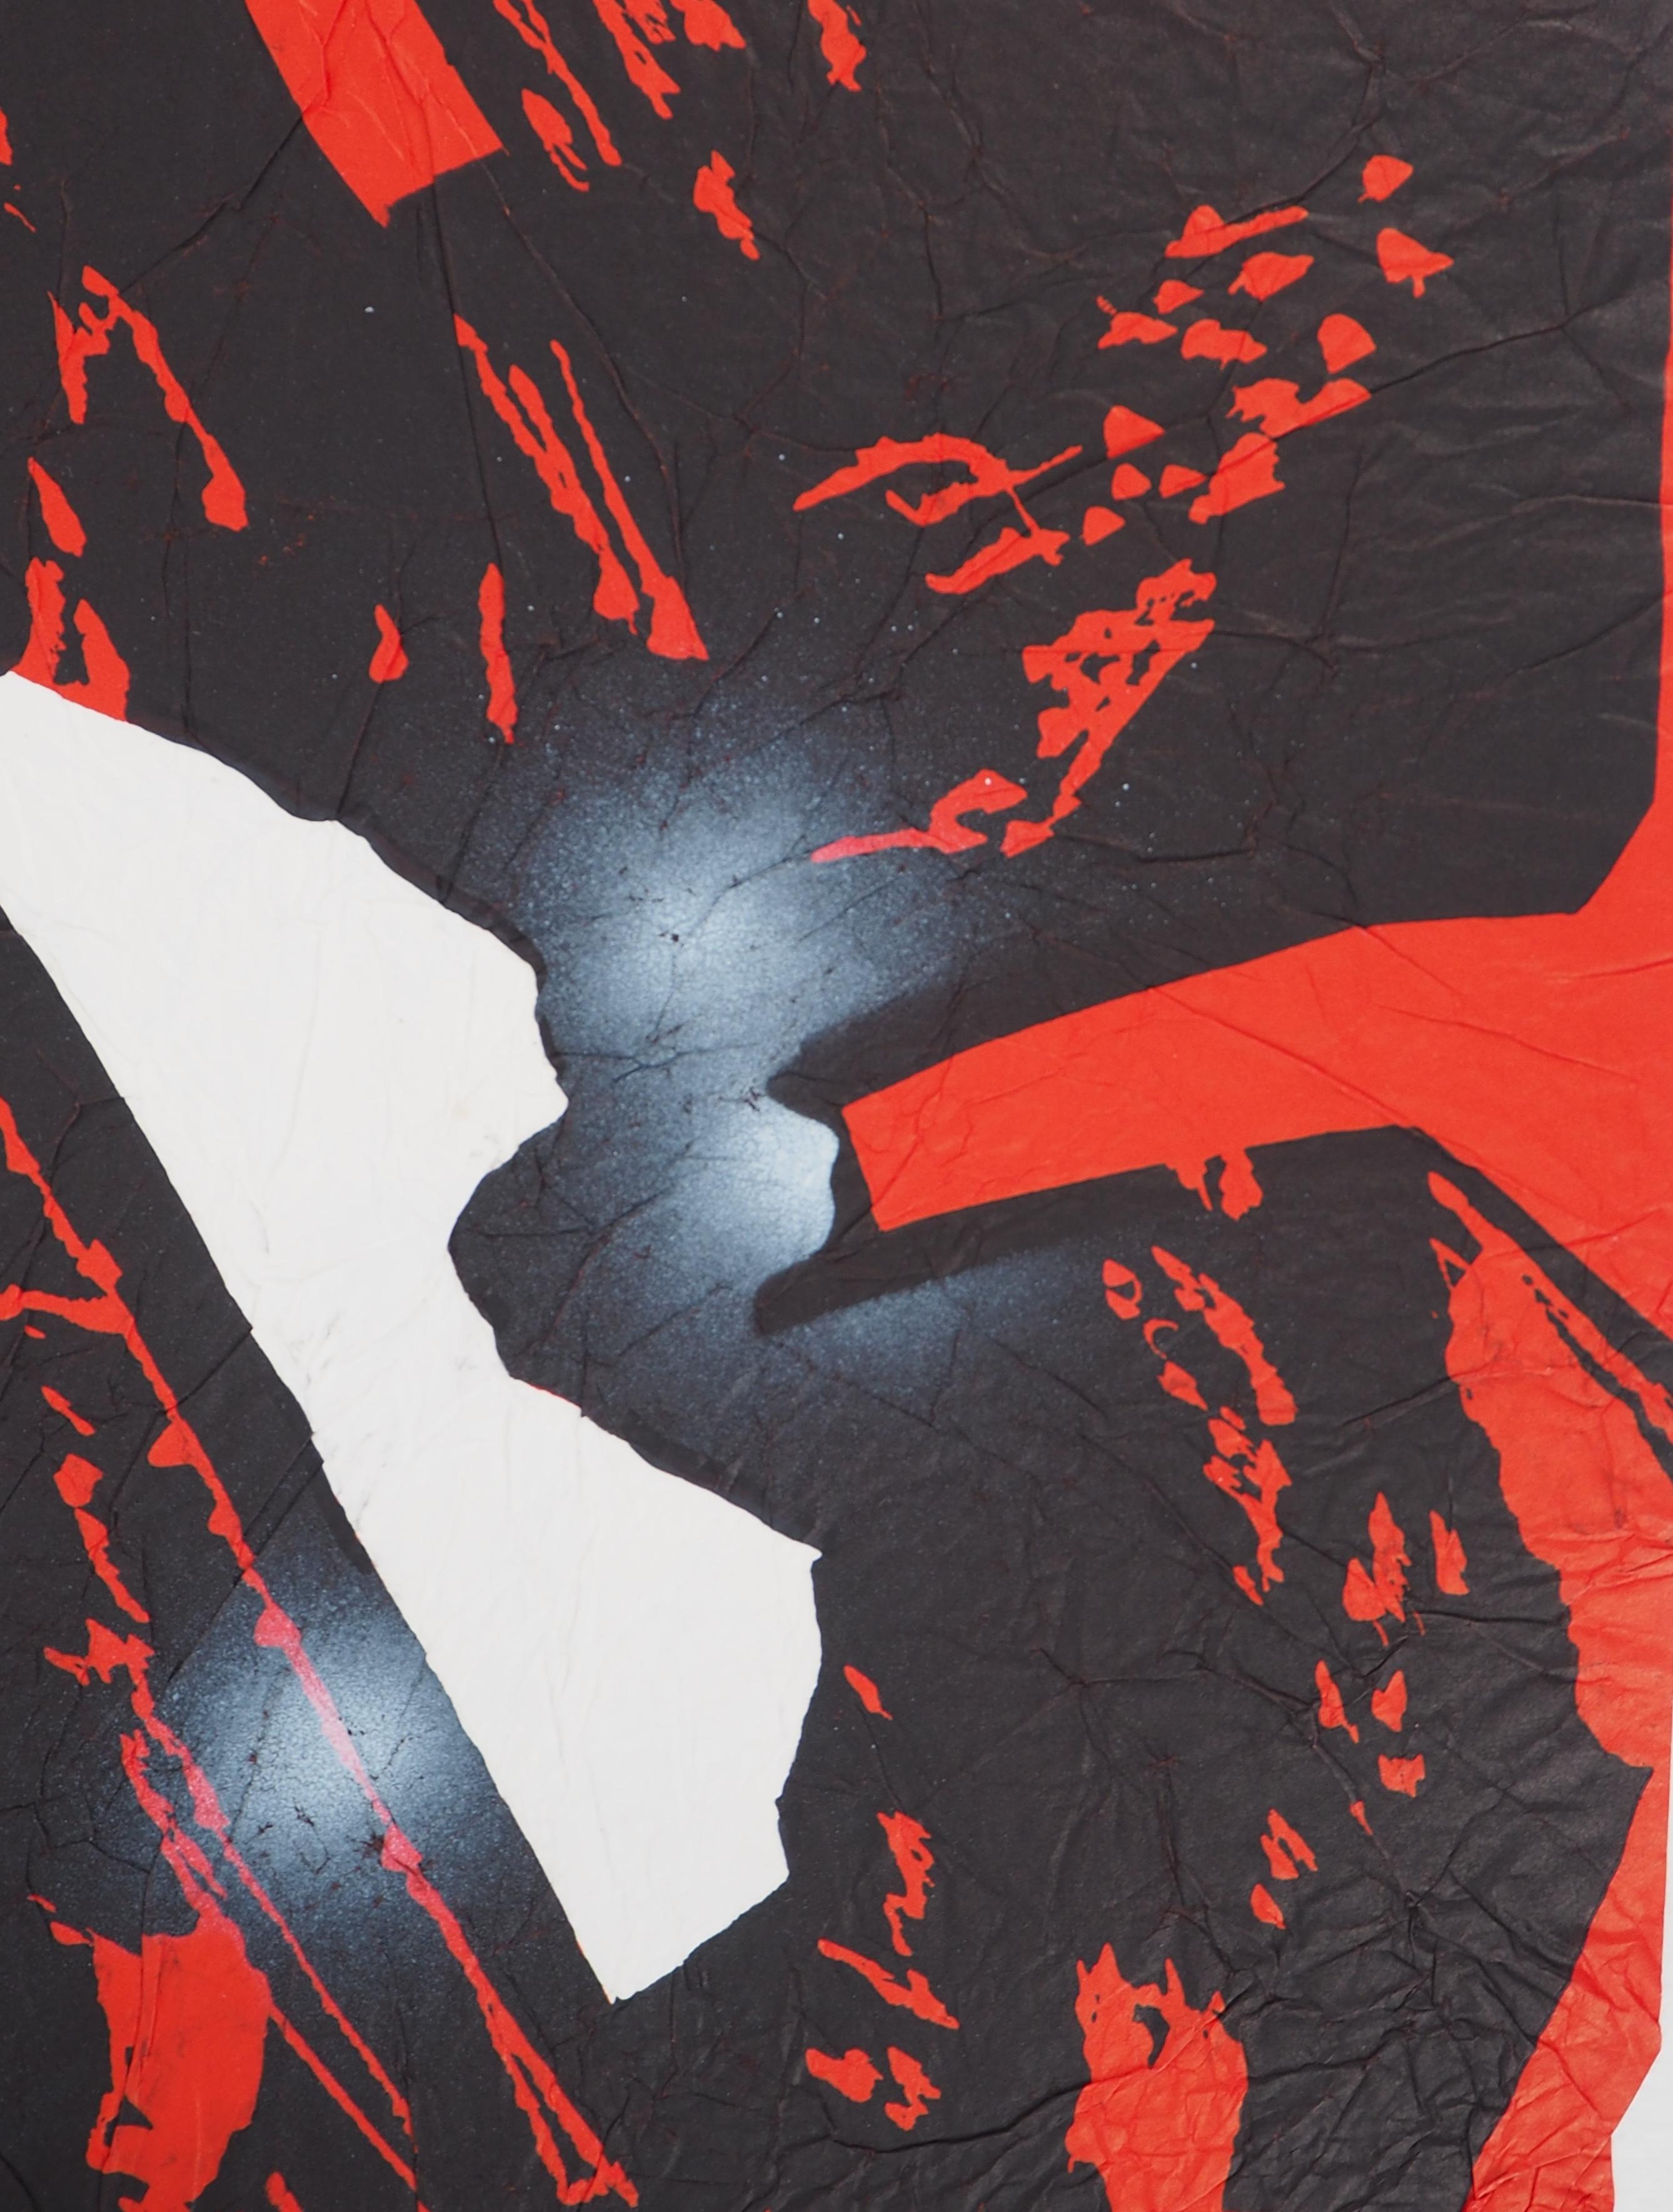 Ladislaus Kijno
Verstrichene Zeit in Rot

Siebdruck auf gerilltem Papier, aufgetragen auf Vellum
Veredelt mit Acrylmalerei
Vollständig von der Künstlerin handgefertigt 
Handsigniert mit Bleistift
Für einen Satz von 9 Stück (jedes Stück ist